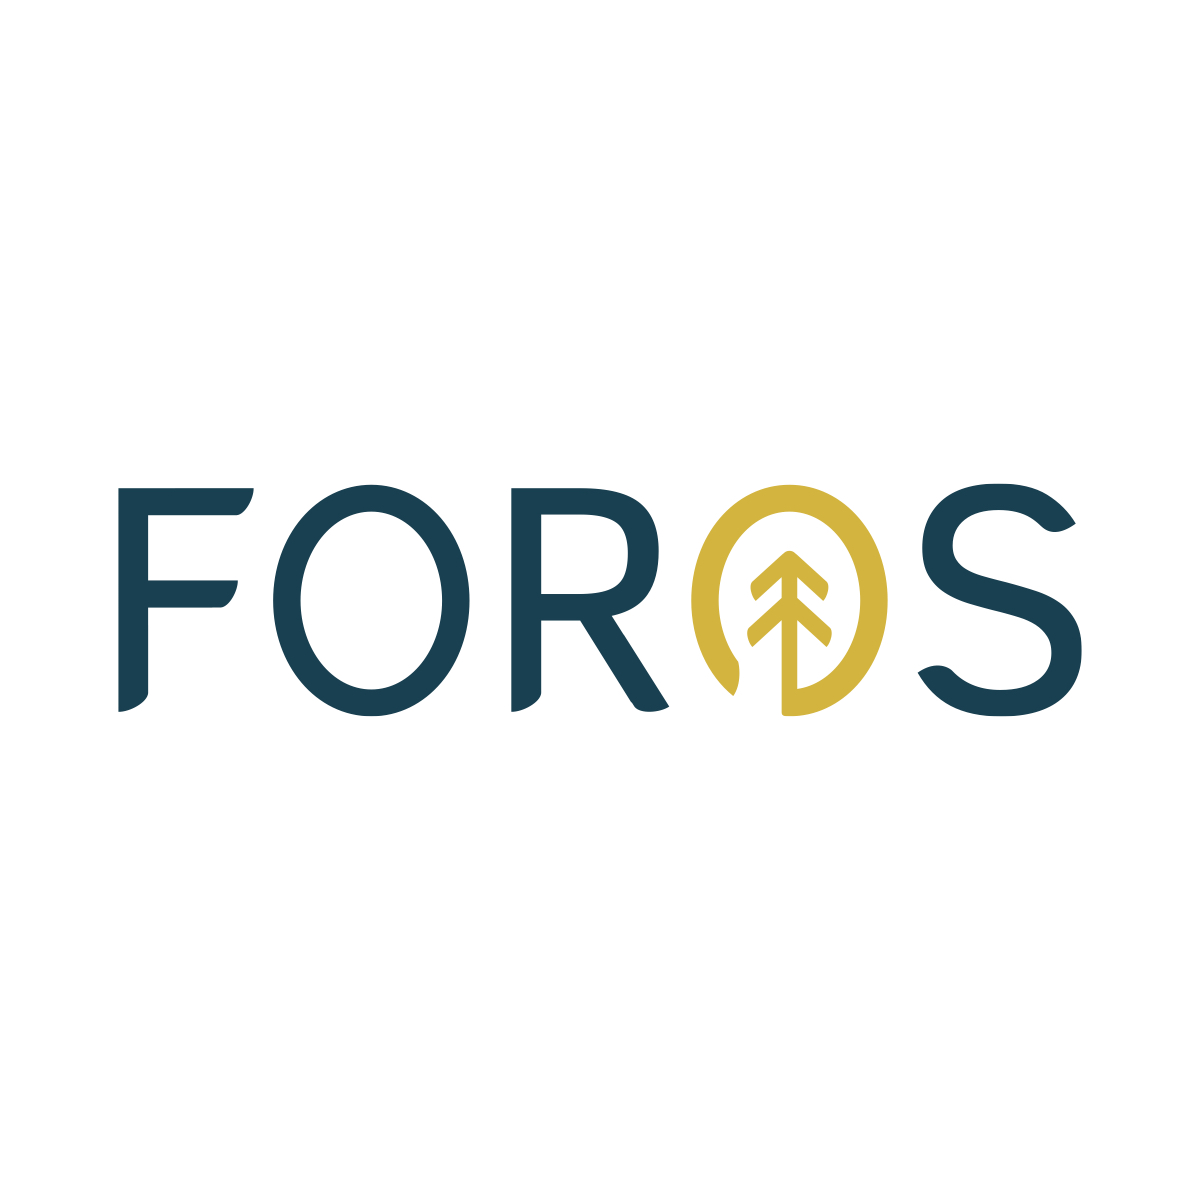 Foros’s logo